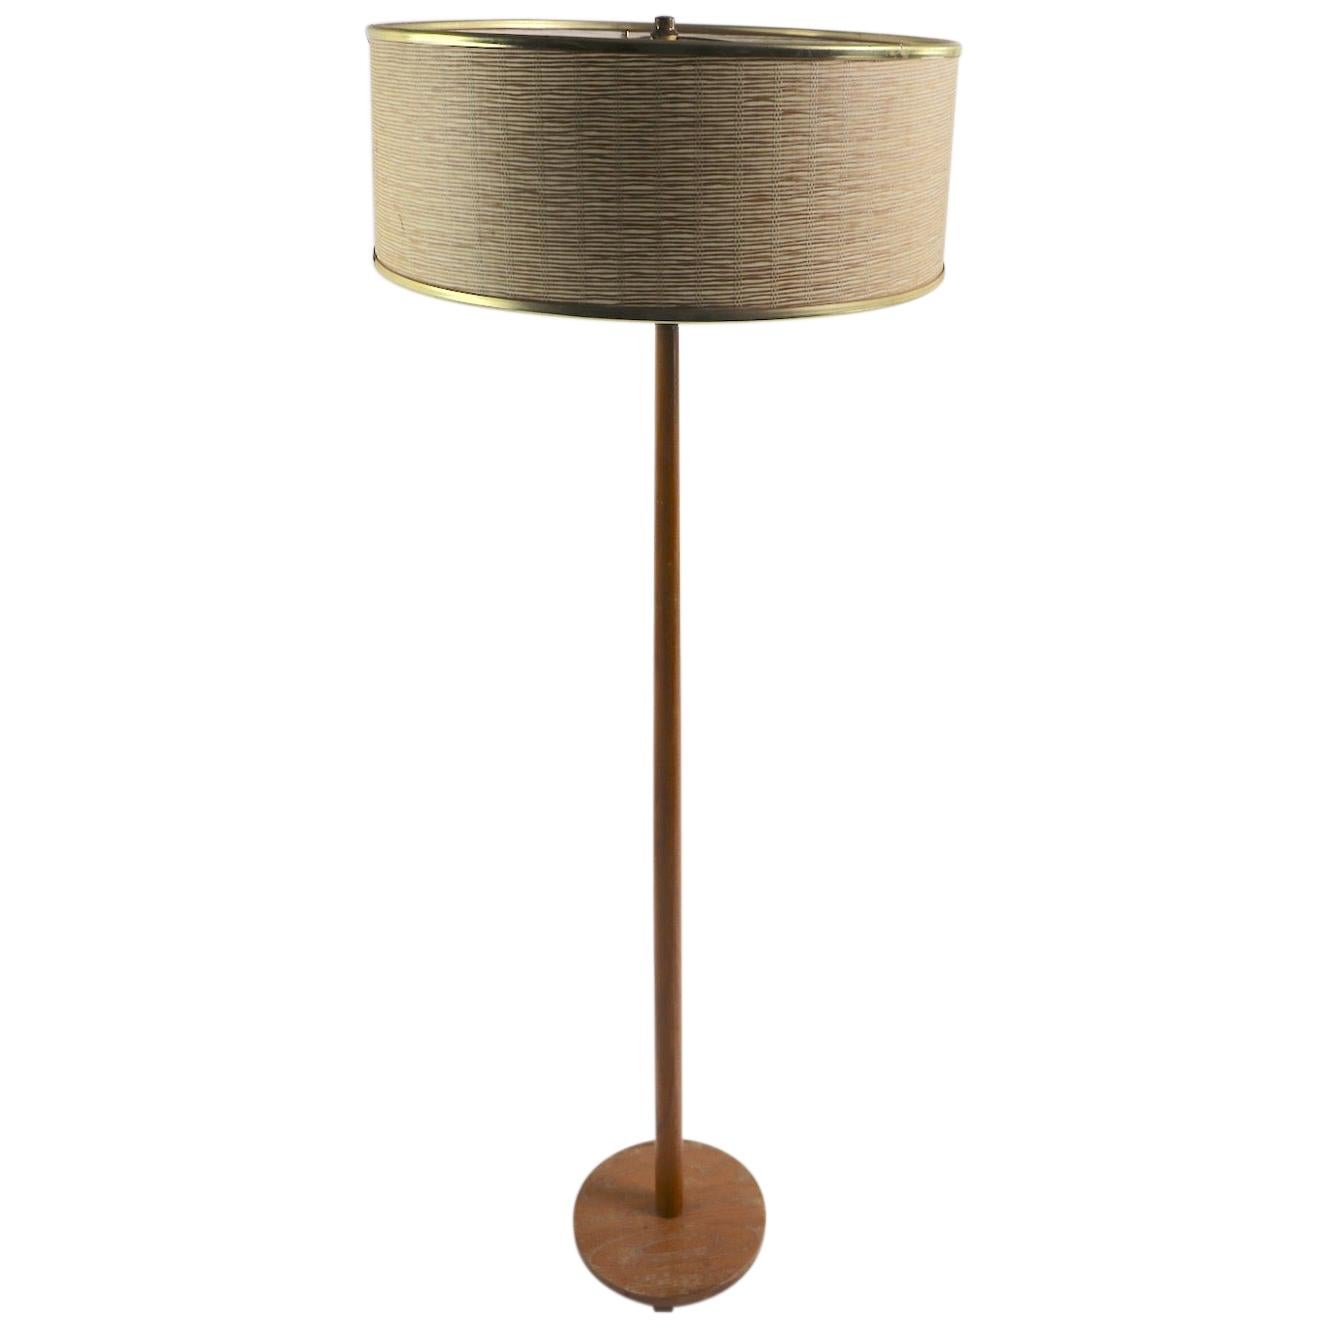 Teak Floor Lamp Made in Sweden